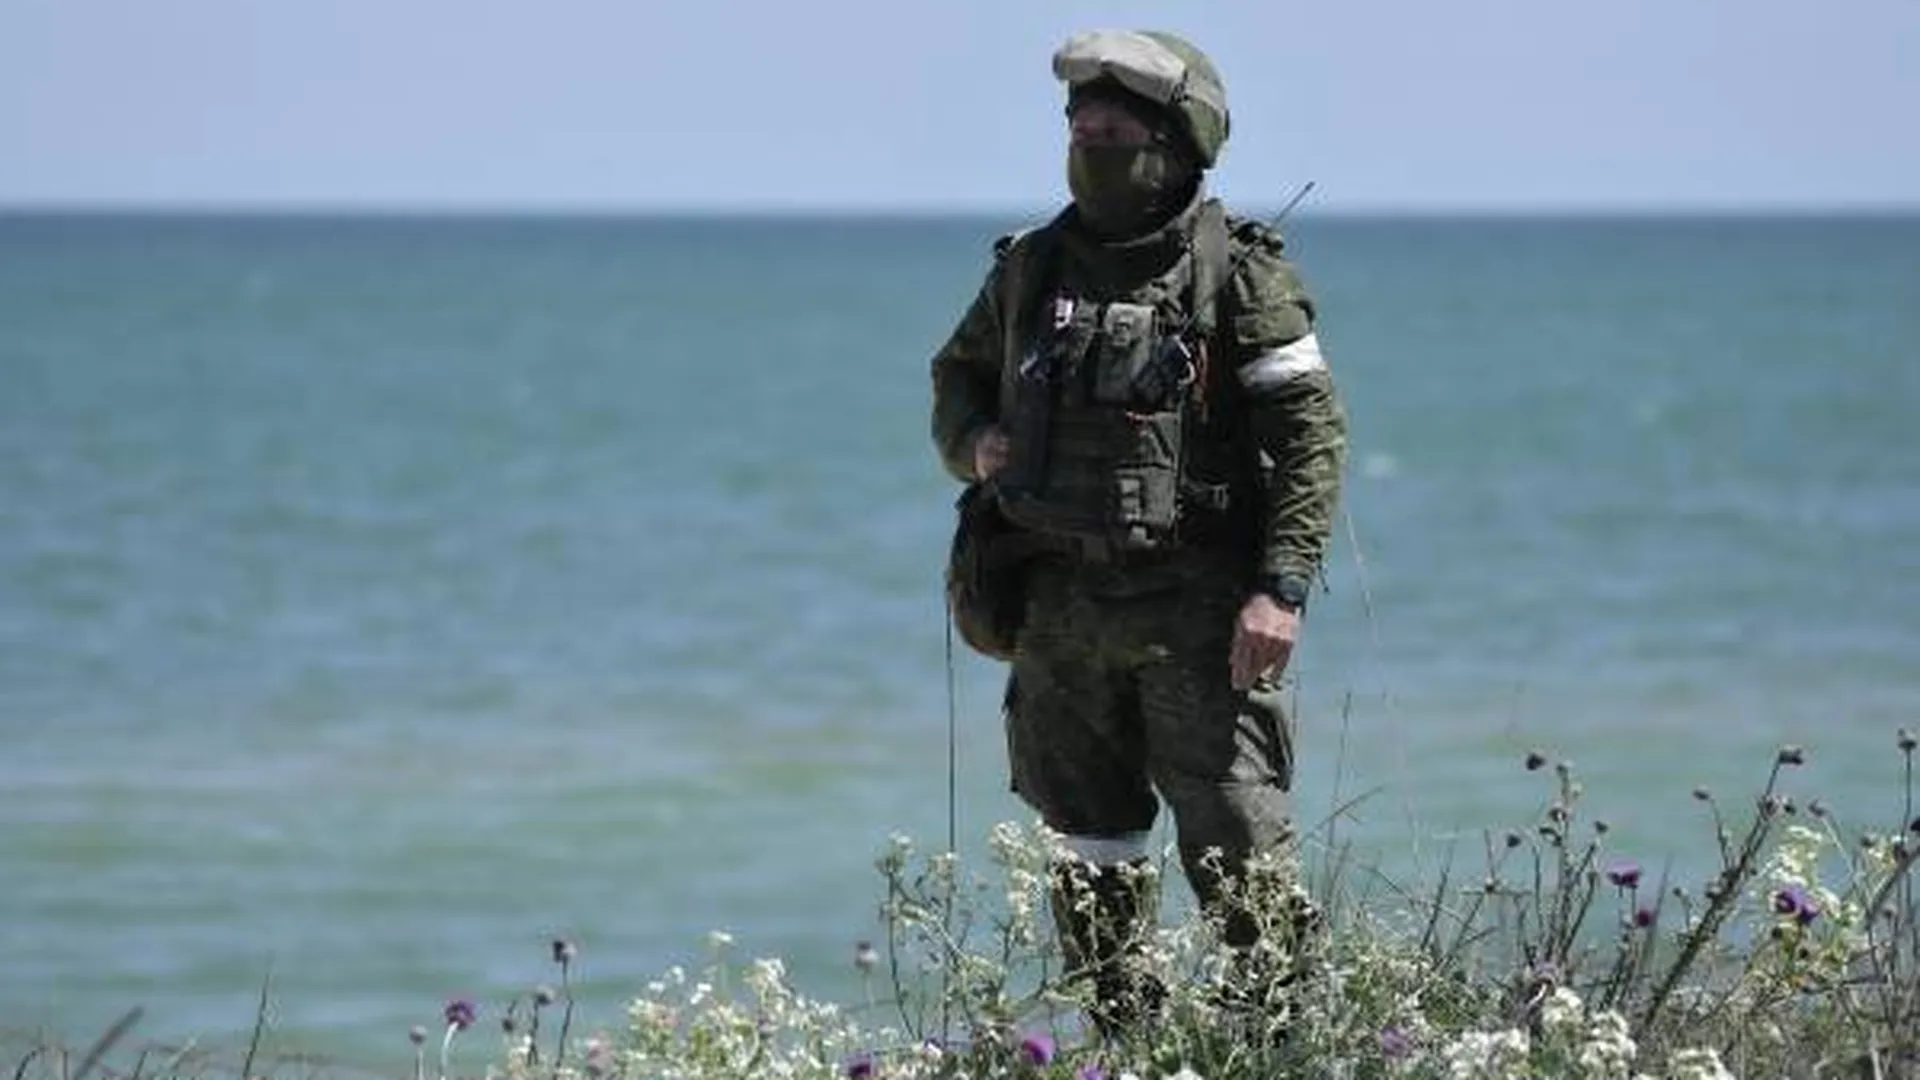 Азовское море как стратегический объект. Почему так важно взять его под контроль России